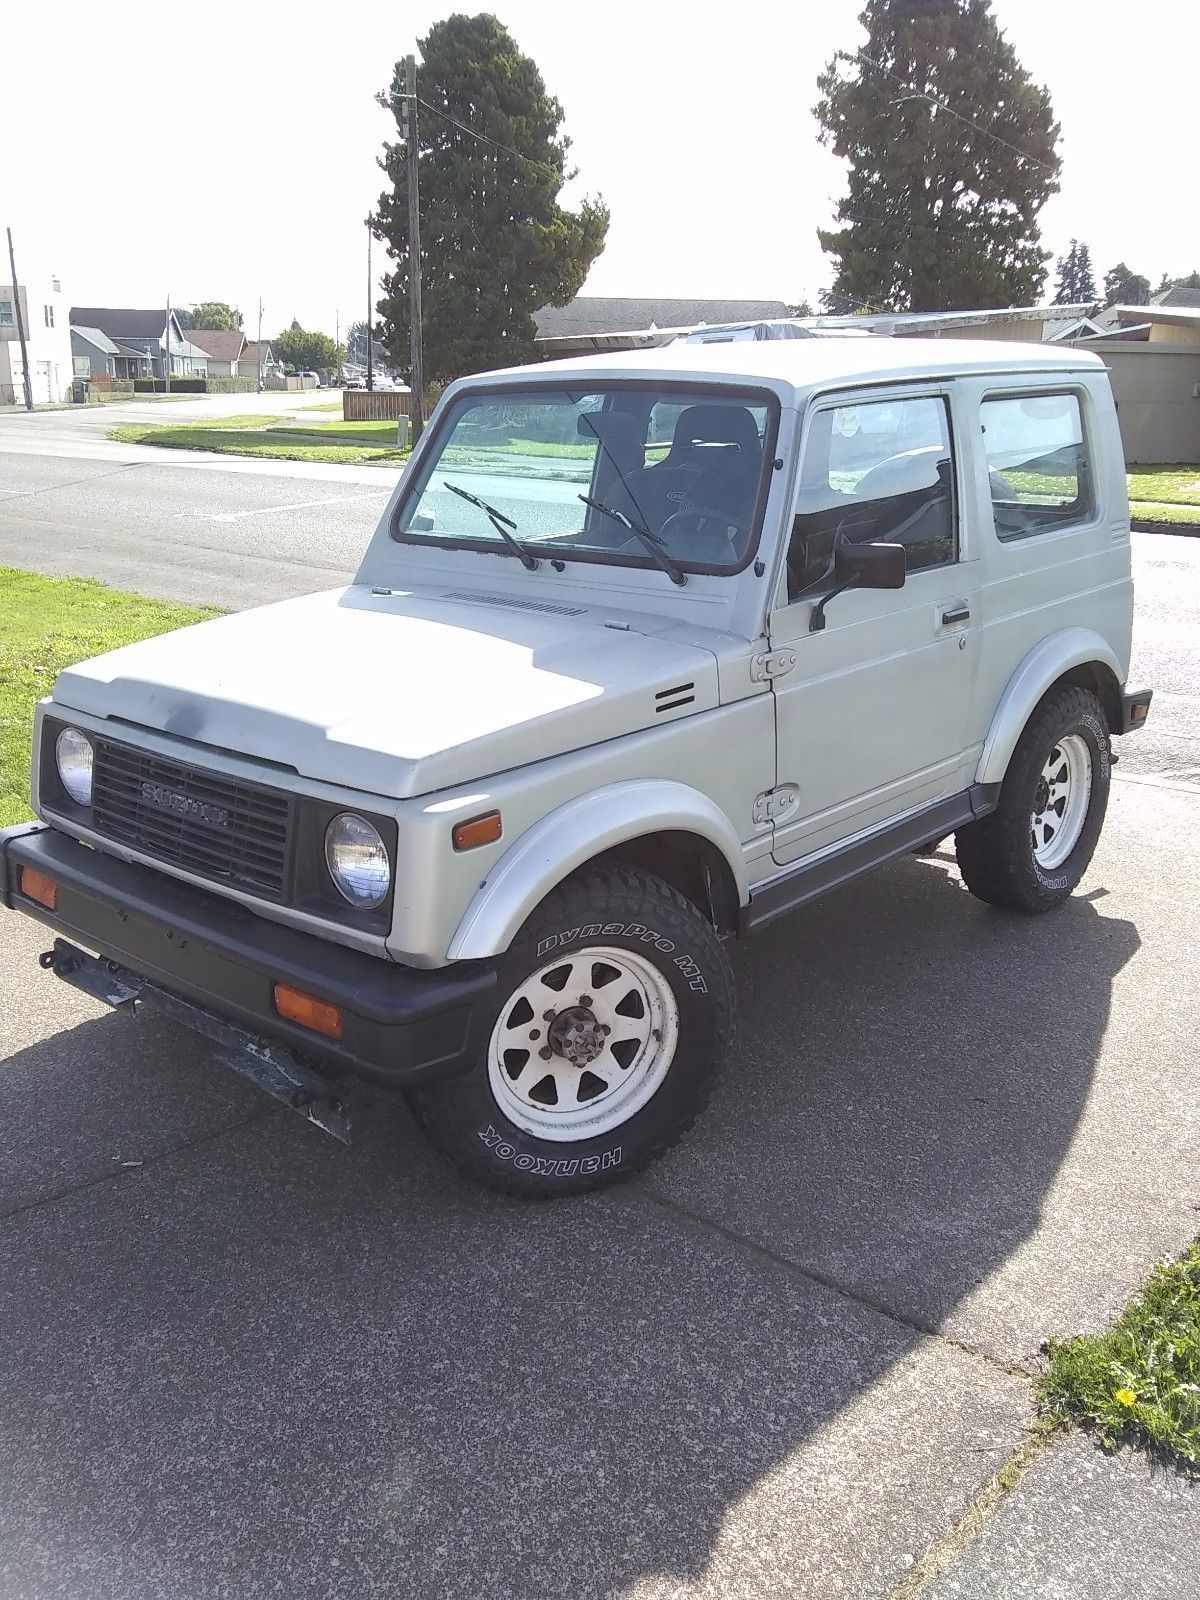 1986 Suzuki Samurai for Sale - Good Beginner Off-Roader on